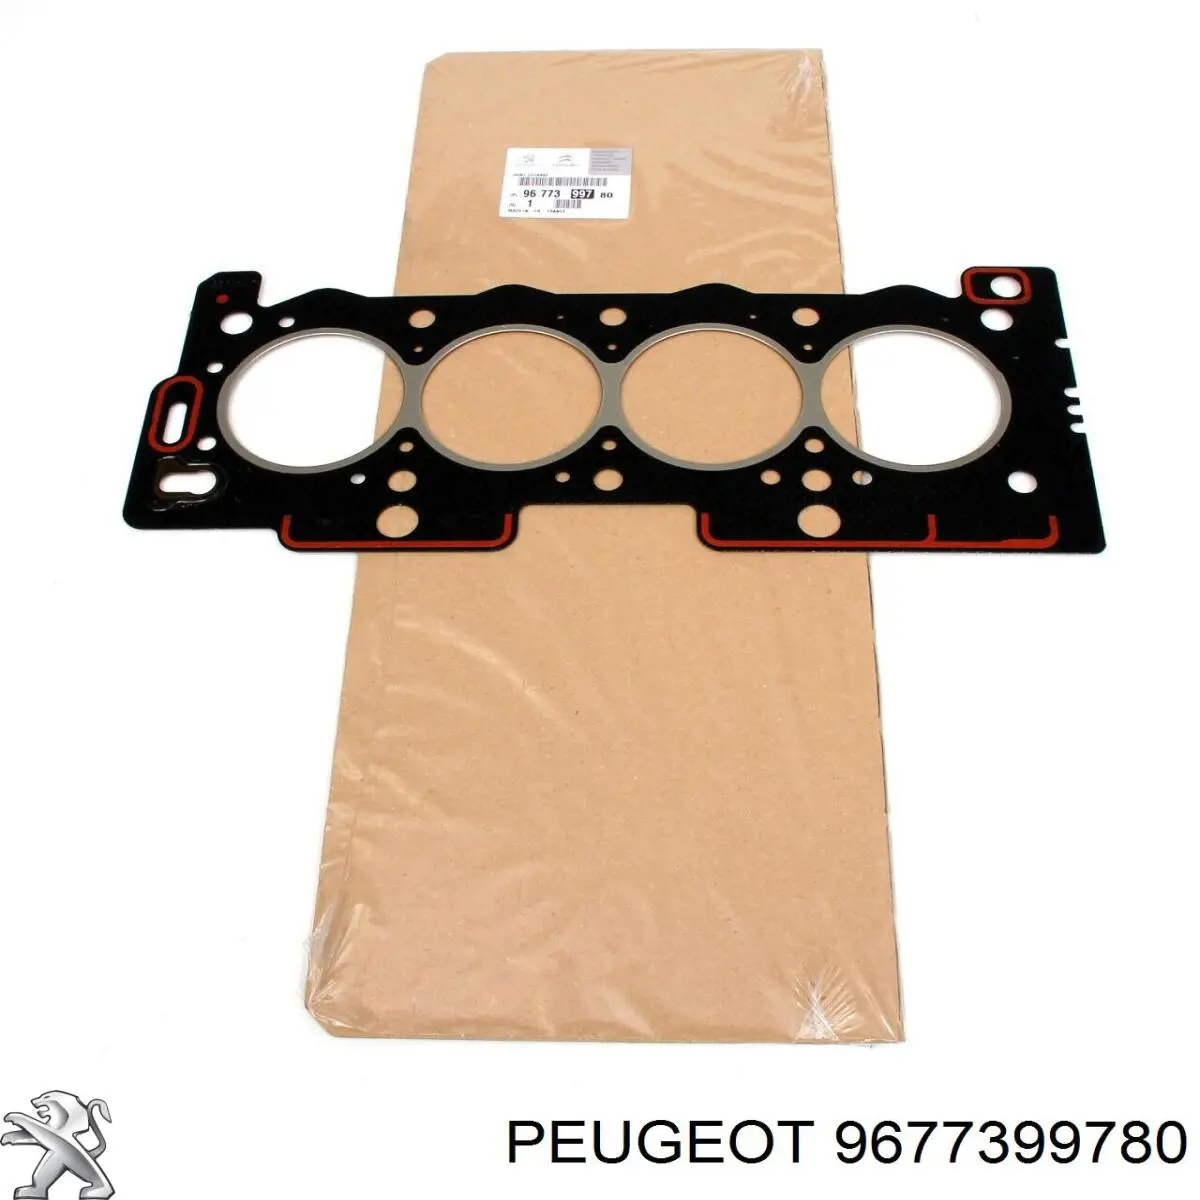 9677399780 Peugeot/Citroen vedante de cabeça de motor (cbc)